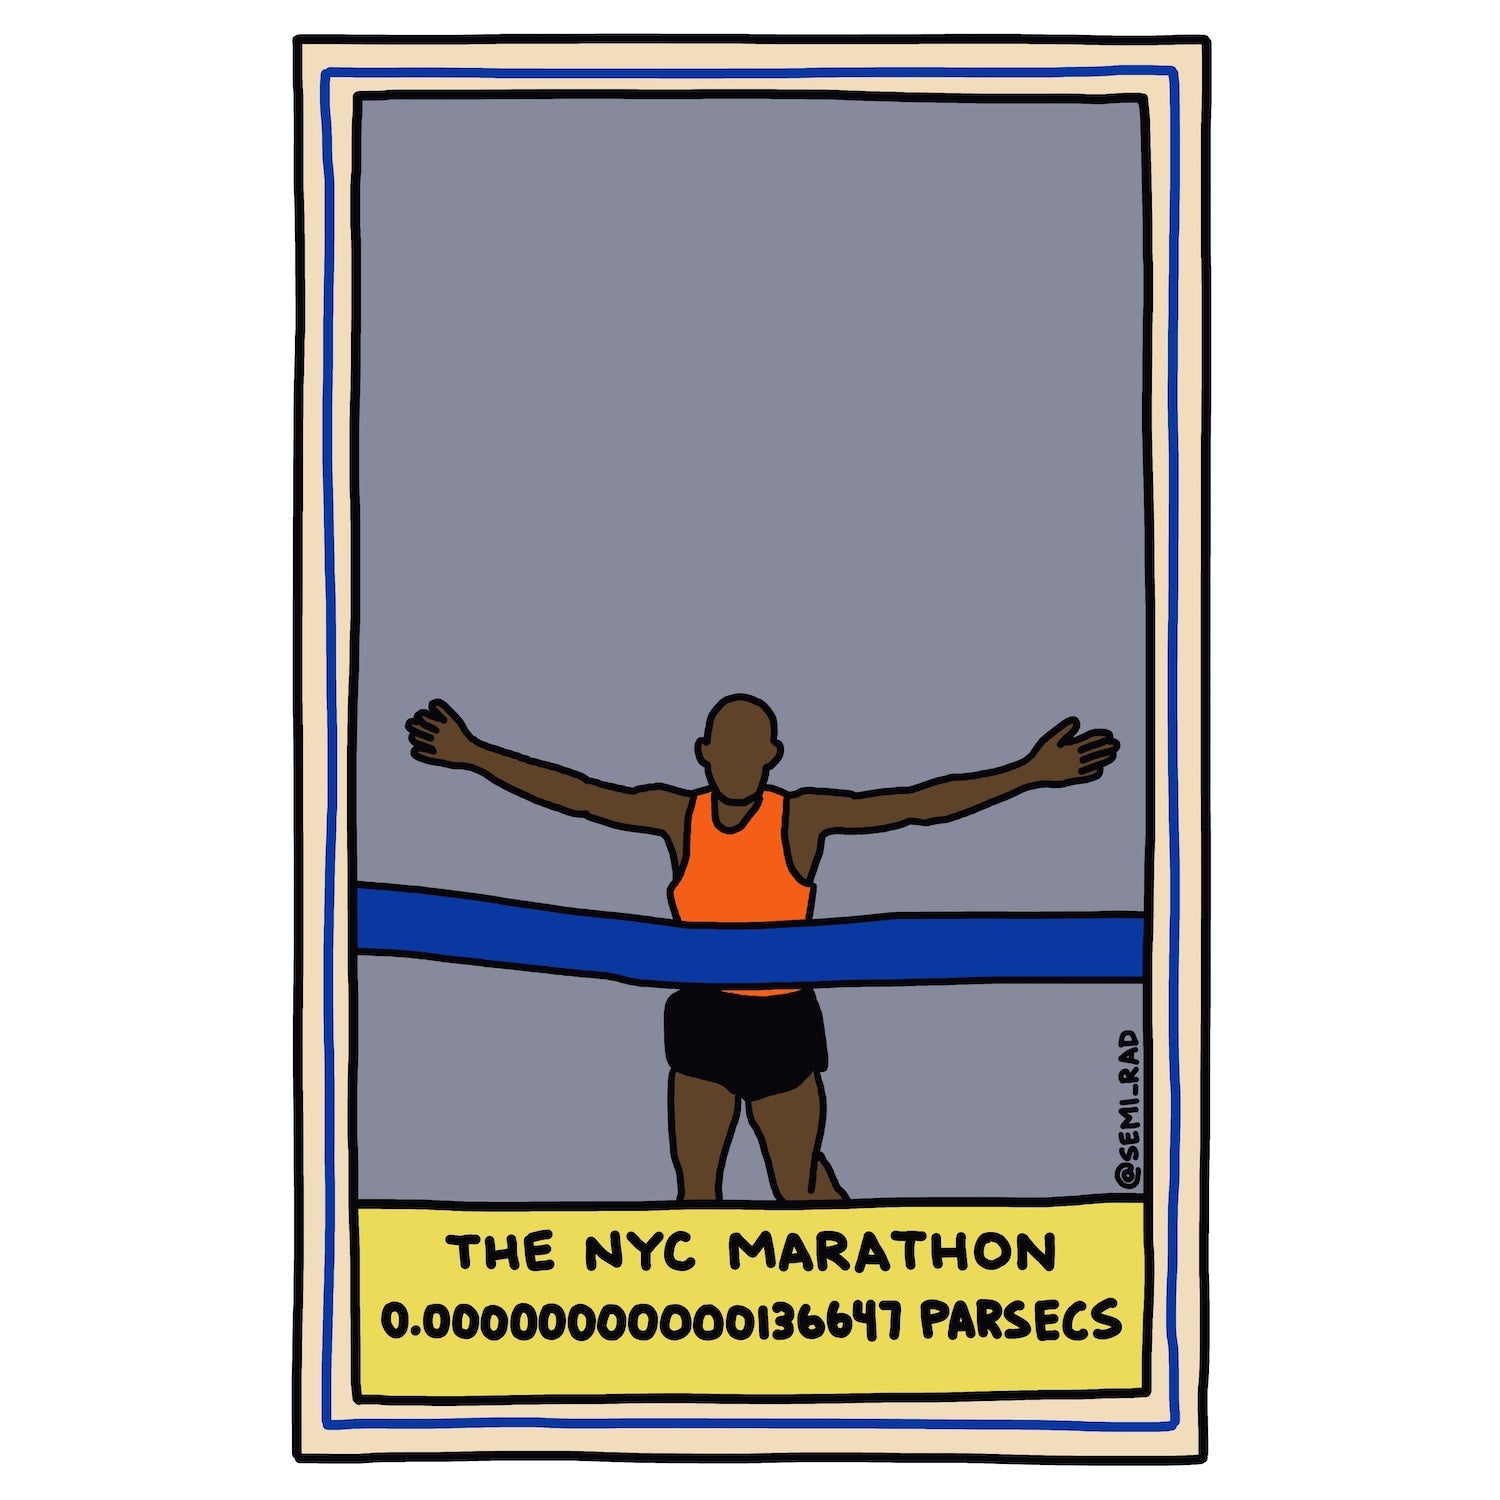 The NYC Marathon: 0.00000000000136647 Parsecs